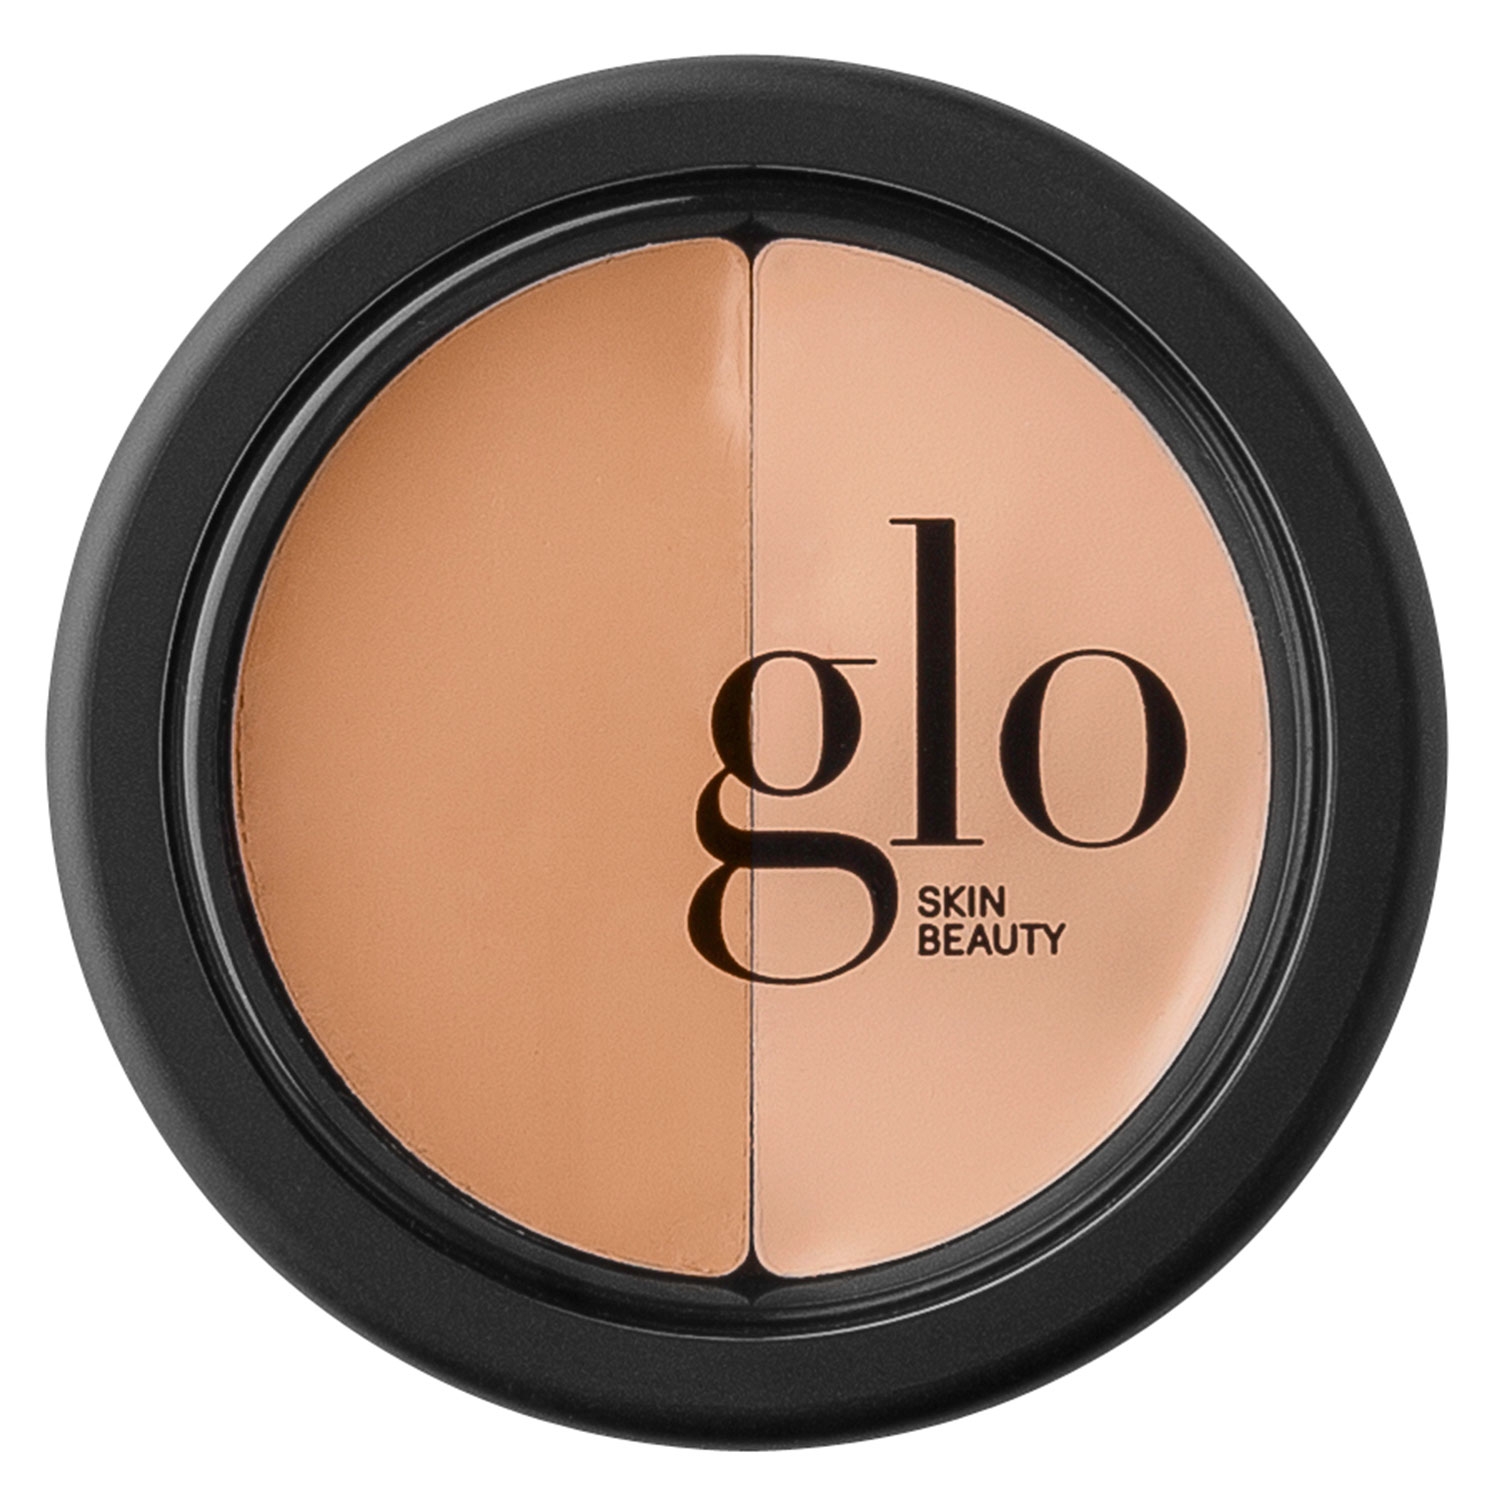 Produktbild von Glo Skin Beauty Concealer - Under Eye Concealer Natural